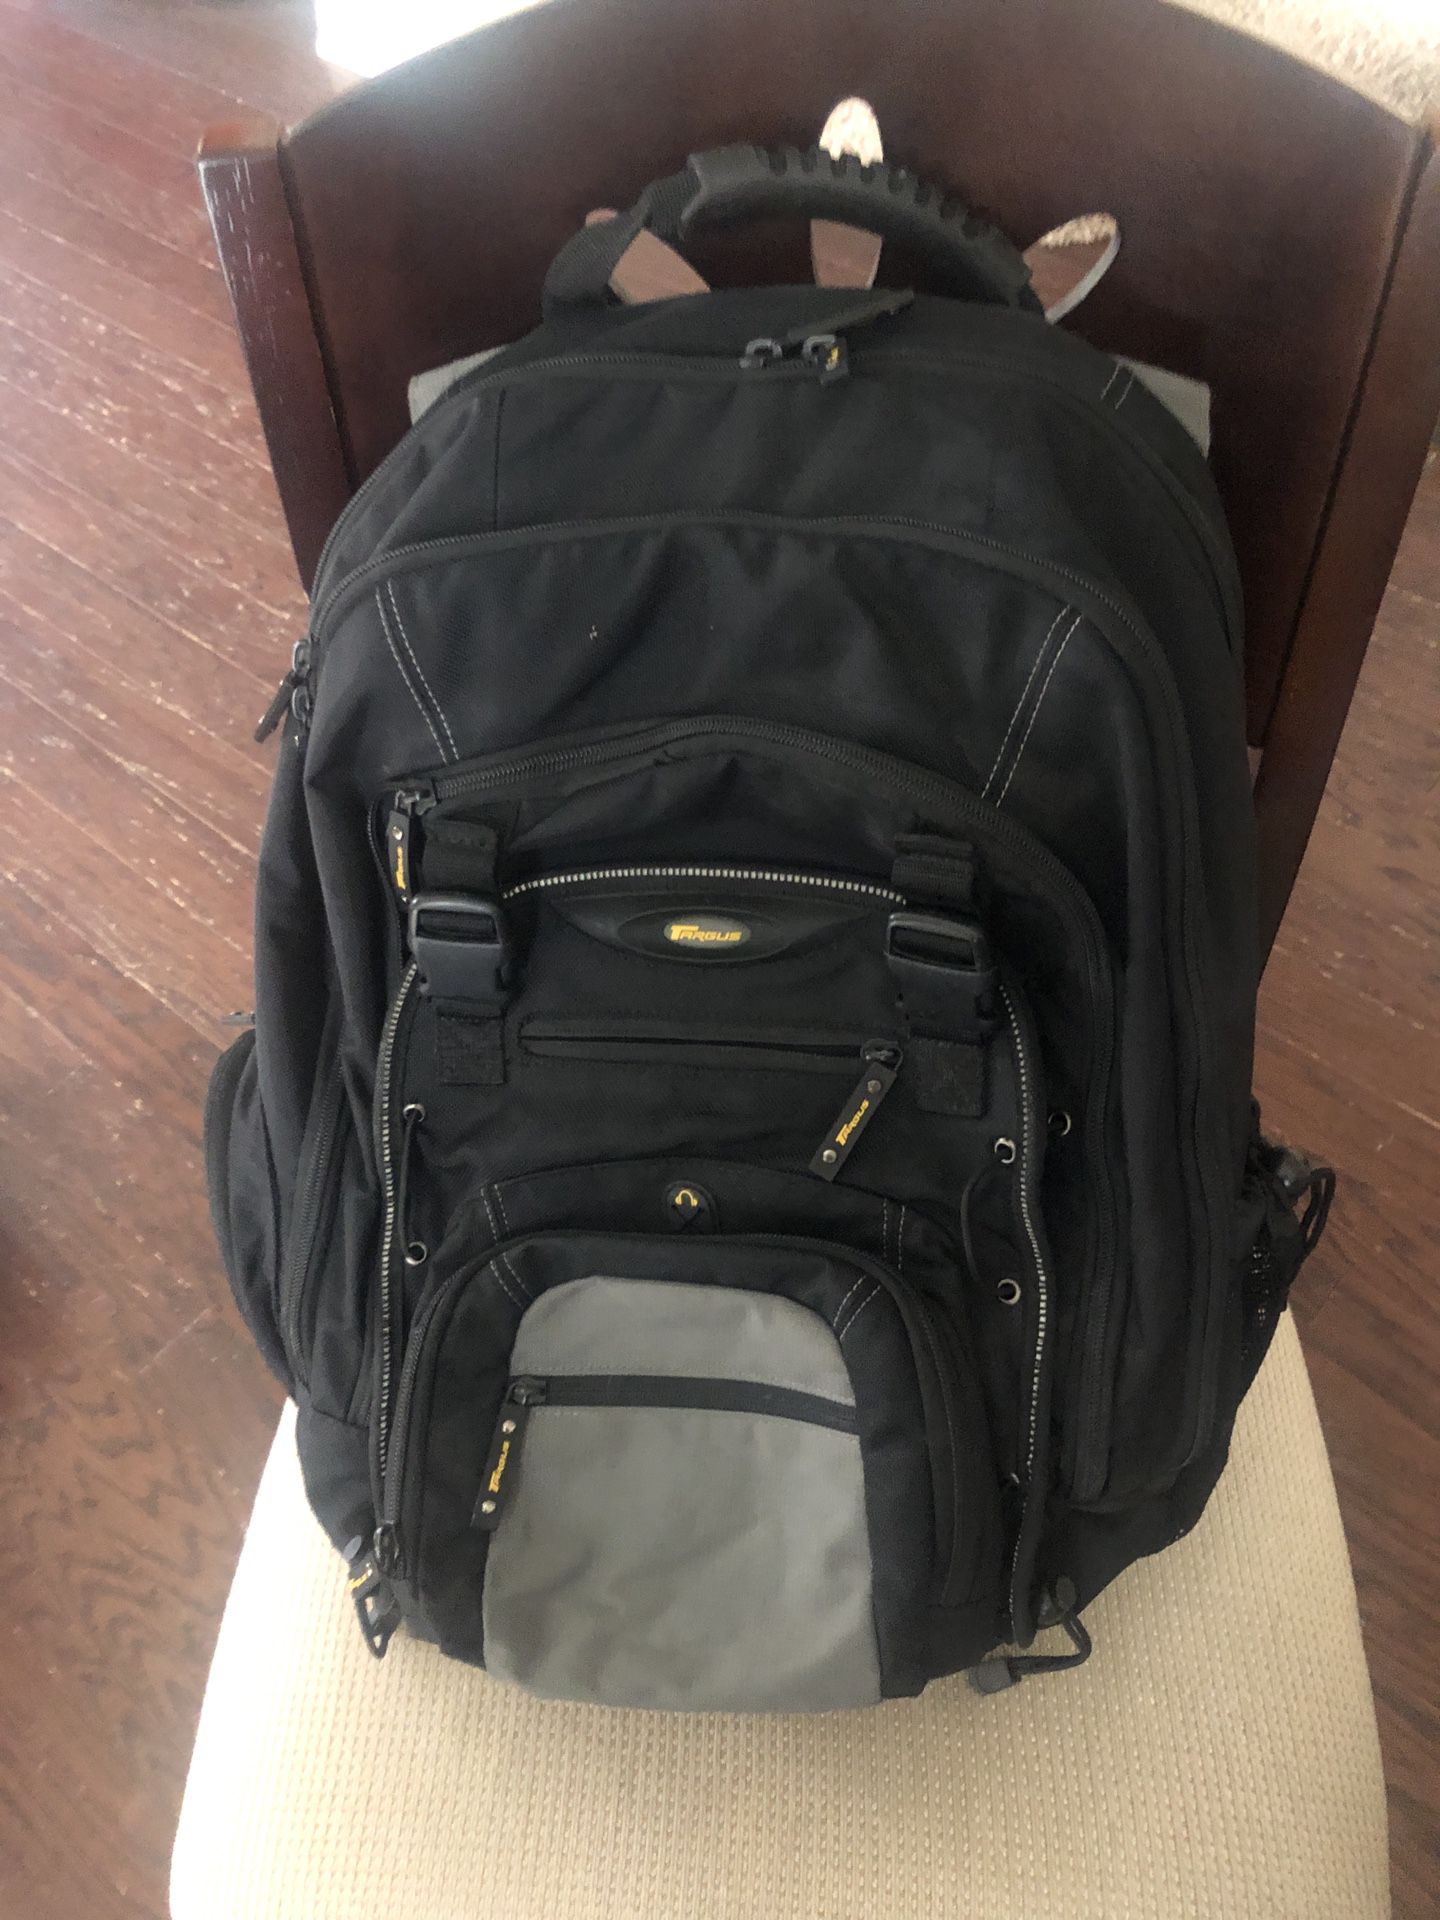 Laptop backpack from Targus